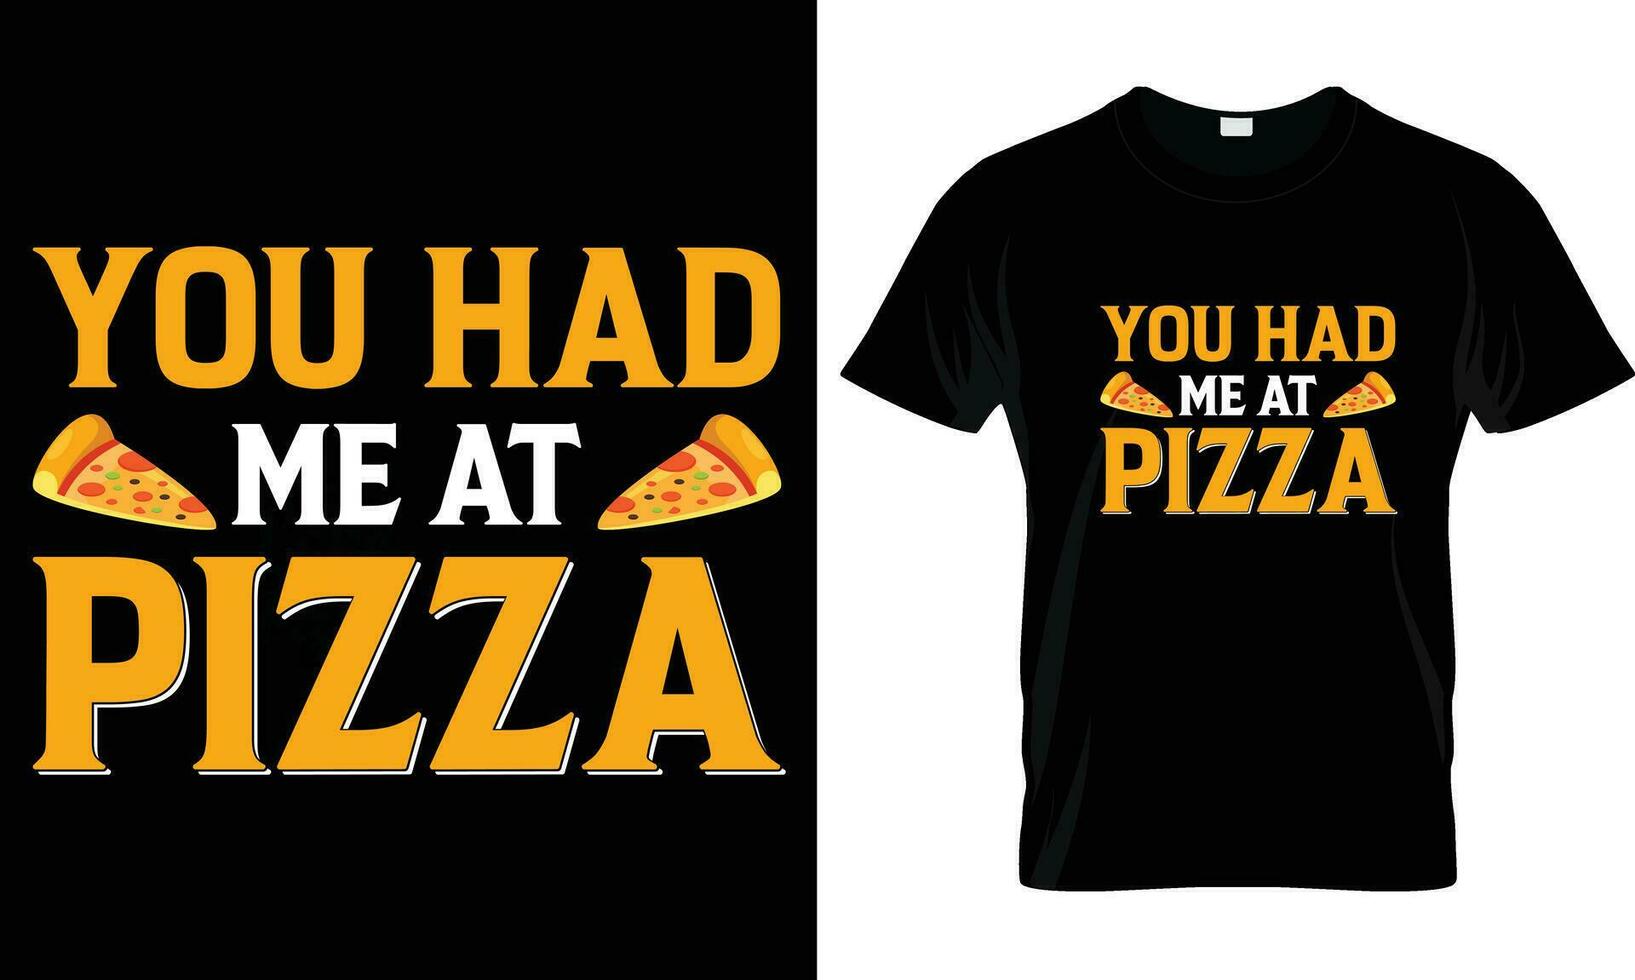 pizza t-shirt design vektor grafisk.